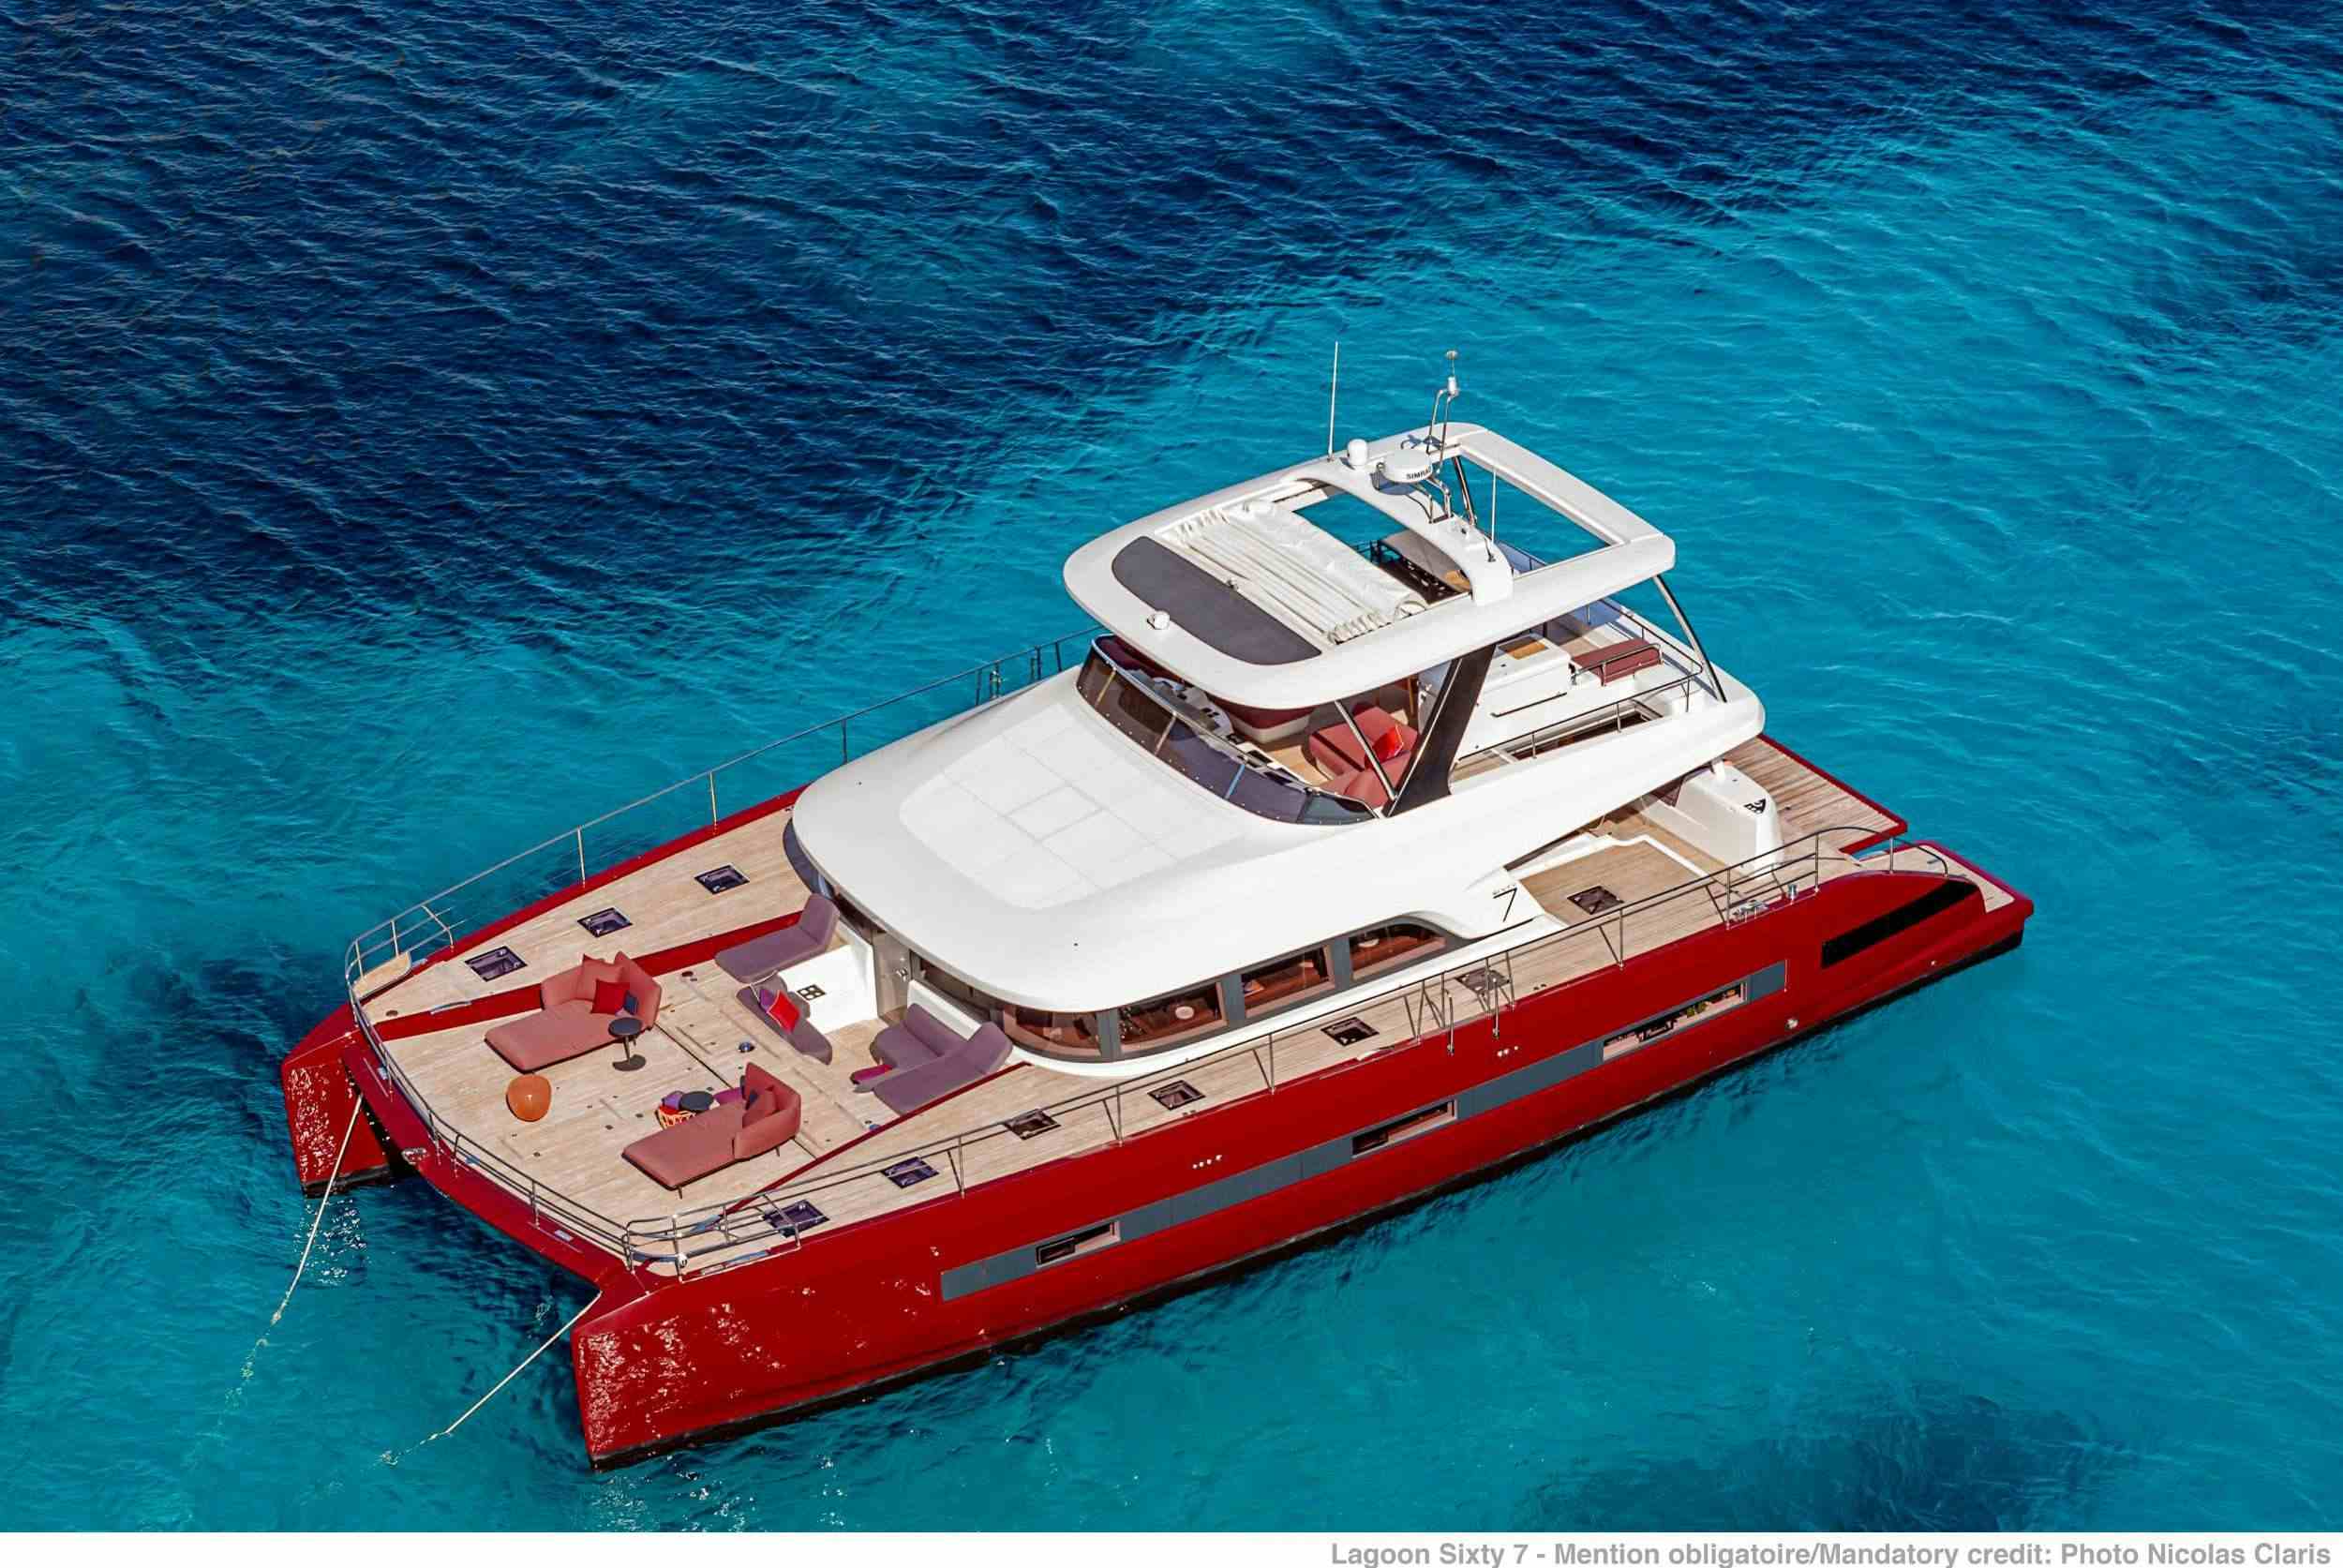 VALIUM 67 - Yacht Charter Marina di Montenero di Bisaccia & Boat hire in Greece 1